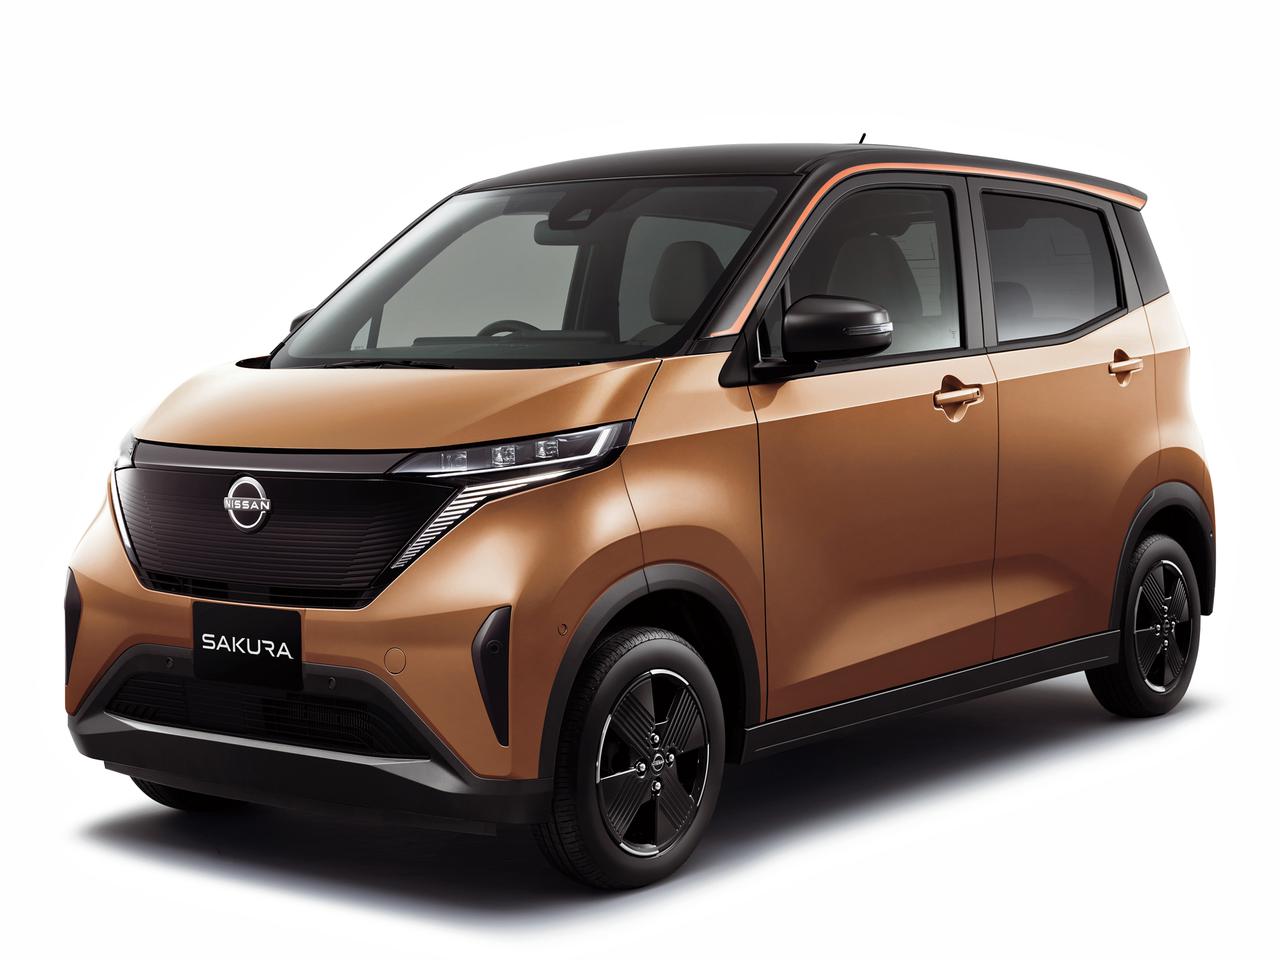 日産が新型軽電気自動車「サクラ」を発表。モビリティの変革を目指して、実質178万円からの超野心的価格を設定